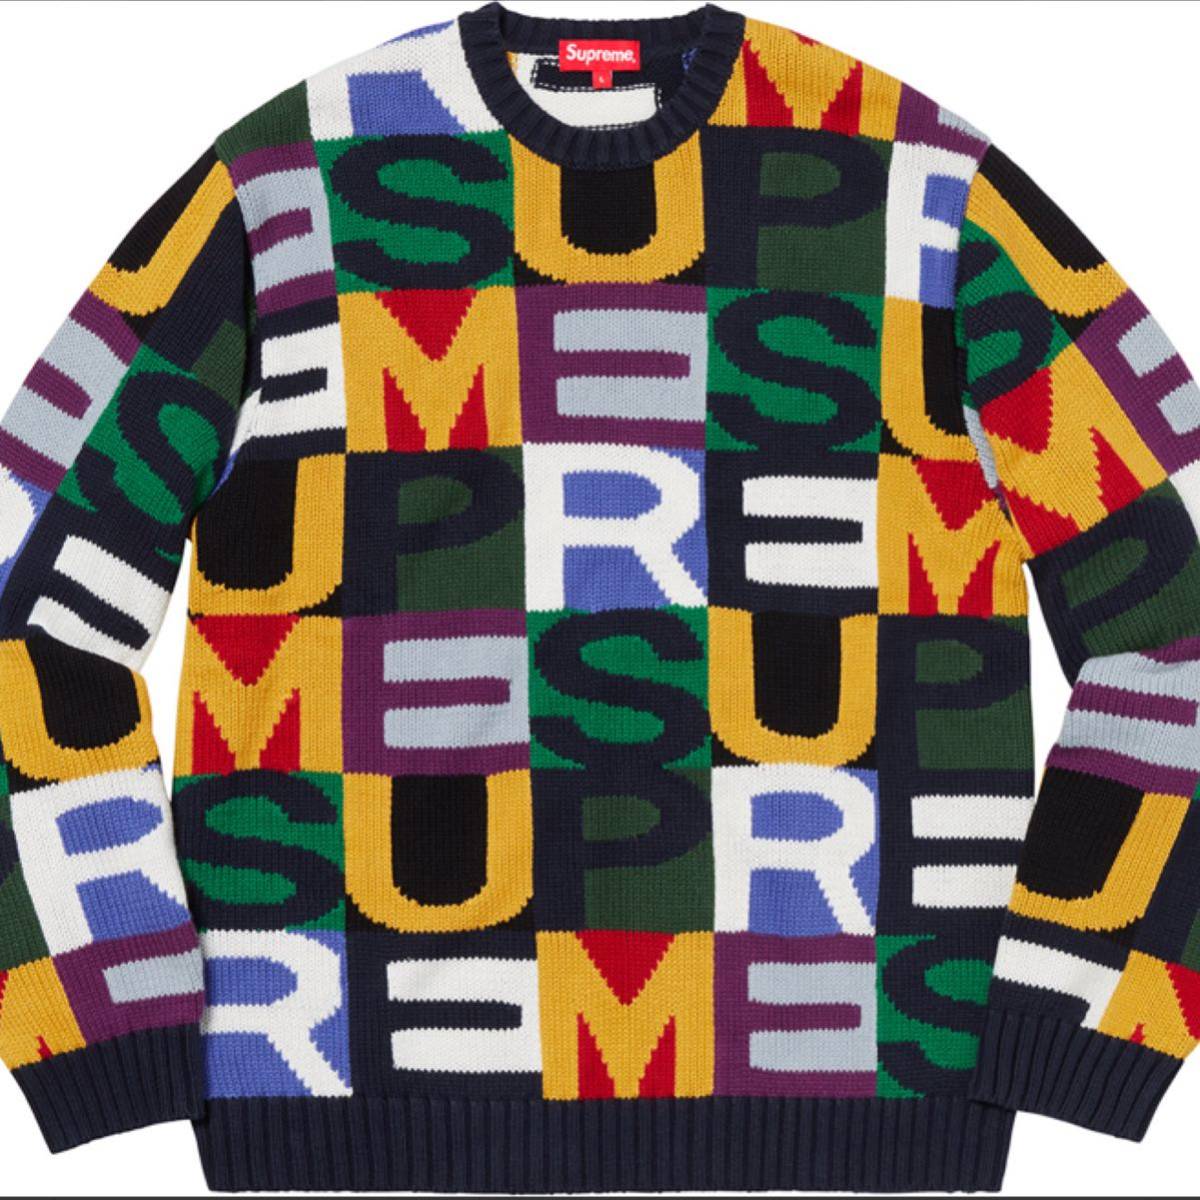 超目玉 美品 Supreme Big Letters Sweater ニット Mサイズ